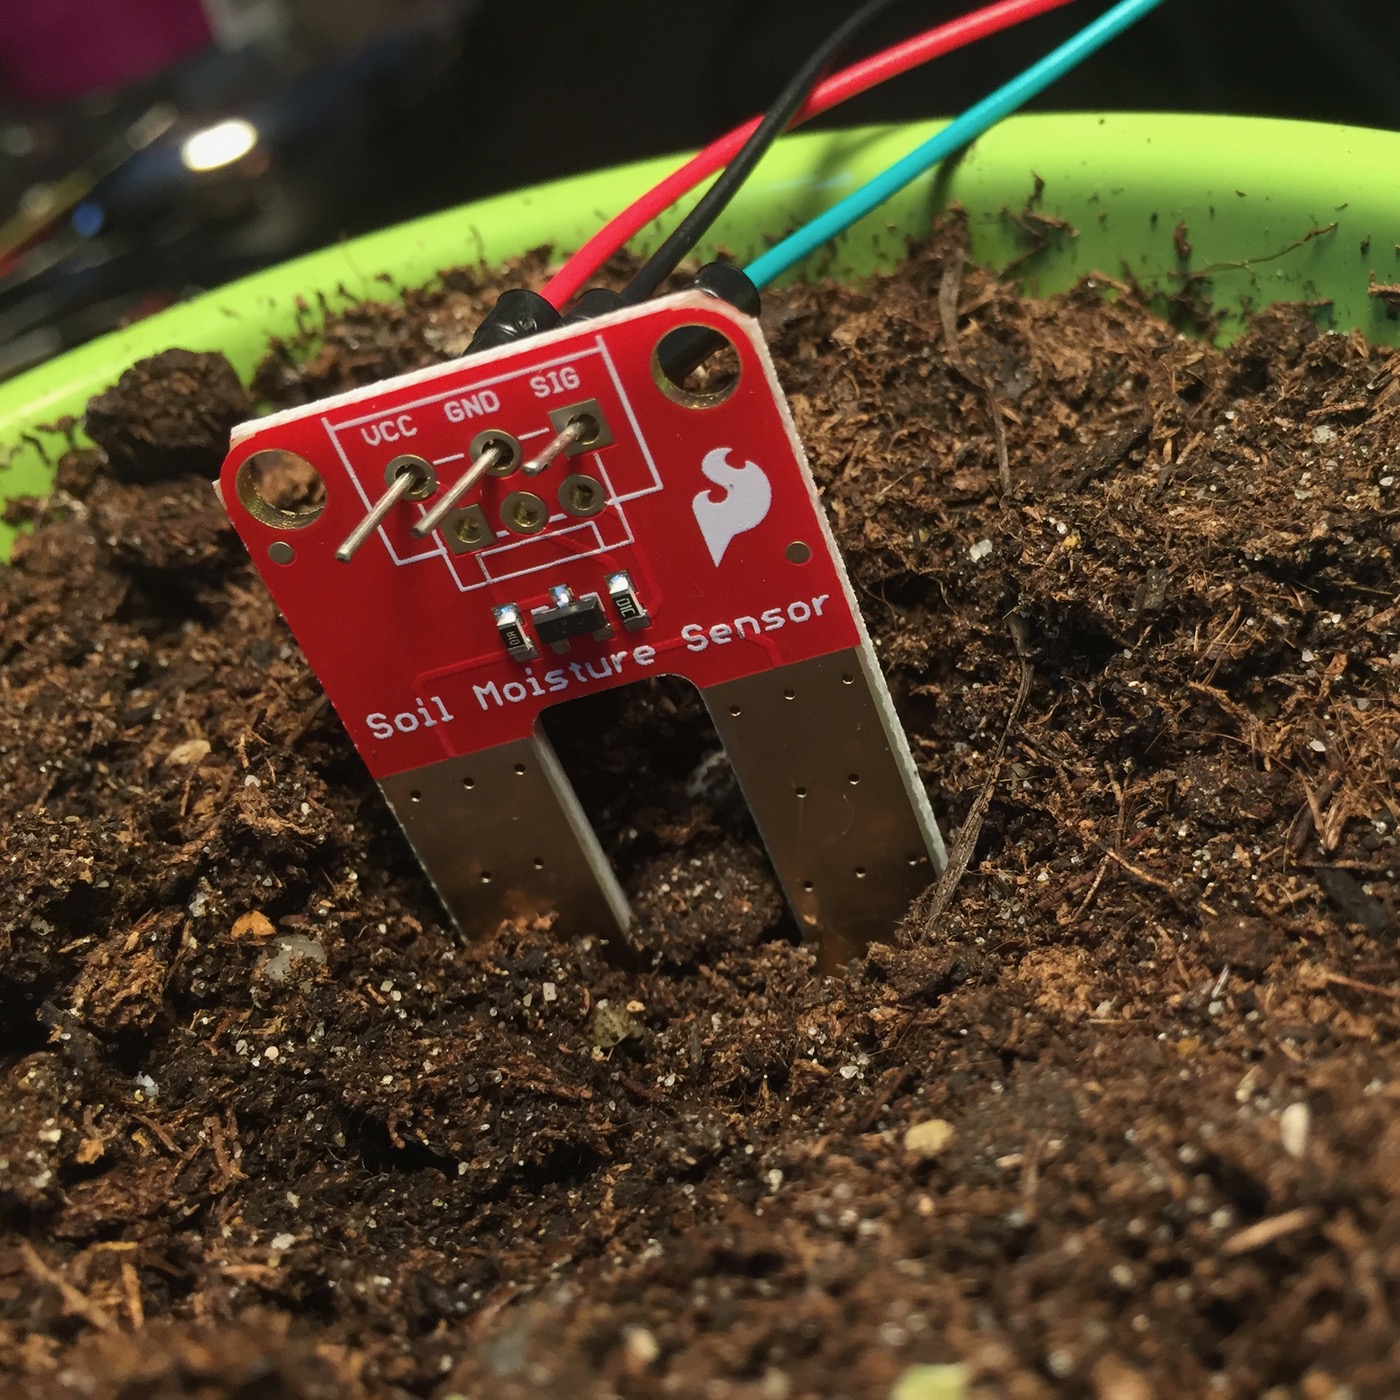 Датчики влажности земли. Soil sensor датчик влажности. Резистивный датчик влажности почвы. Датчик влажности почвы ардуино Soil Moisture sensor. Датчик влажности почвы SMT 100.